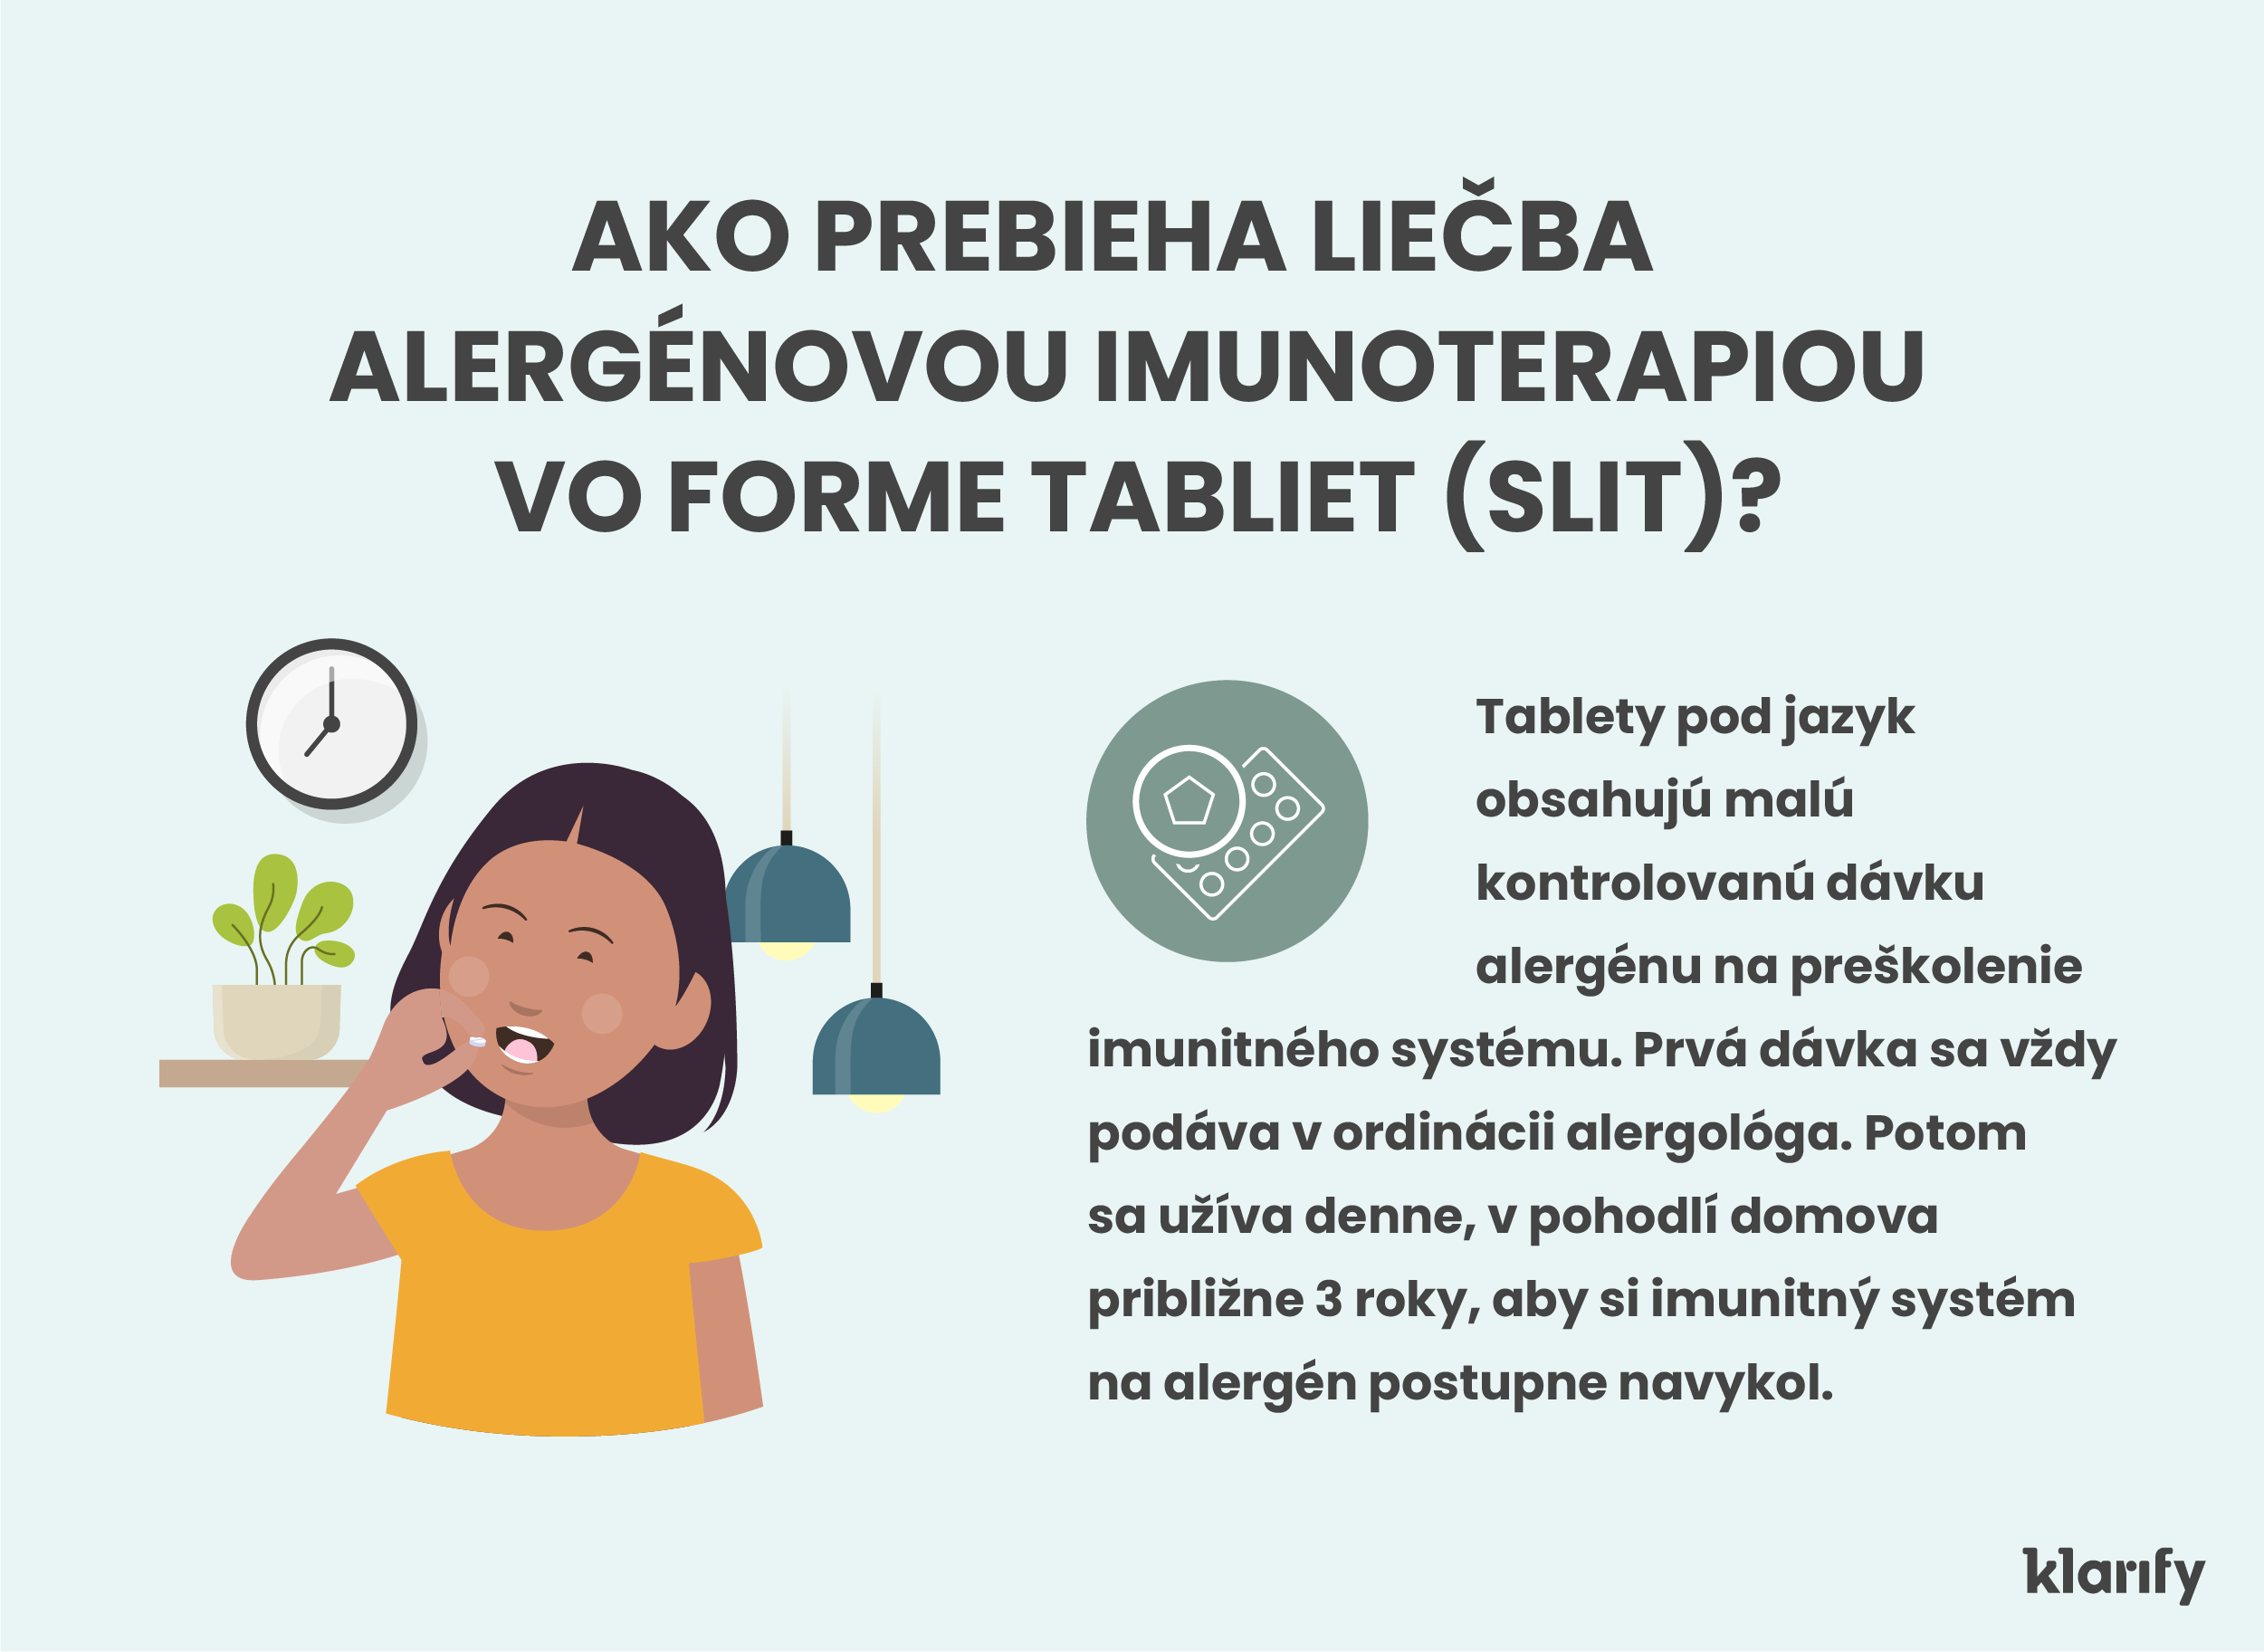  Infografika popisujúca tabletovú formu alergénovej imunoterapie (sublinguálna forma). Podrobnosti infografiky sú uvedené nižšie